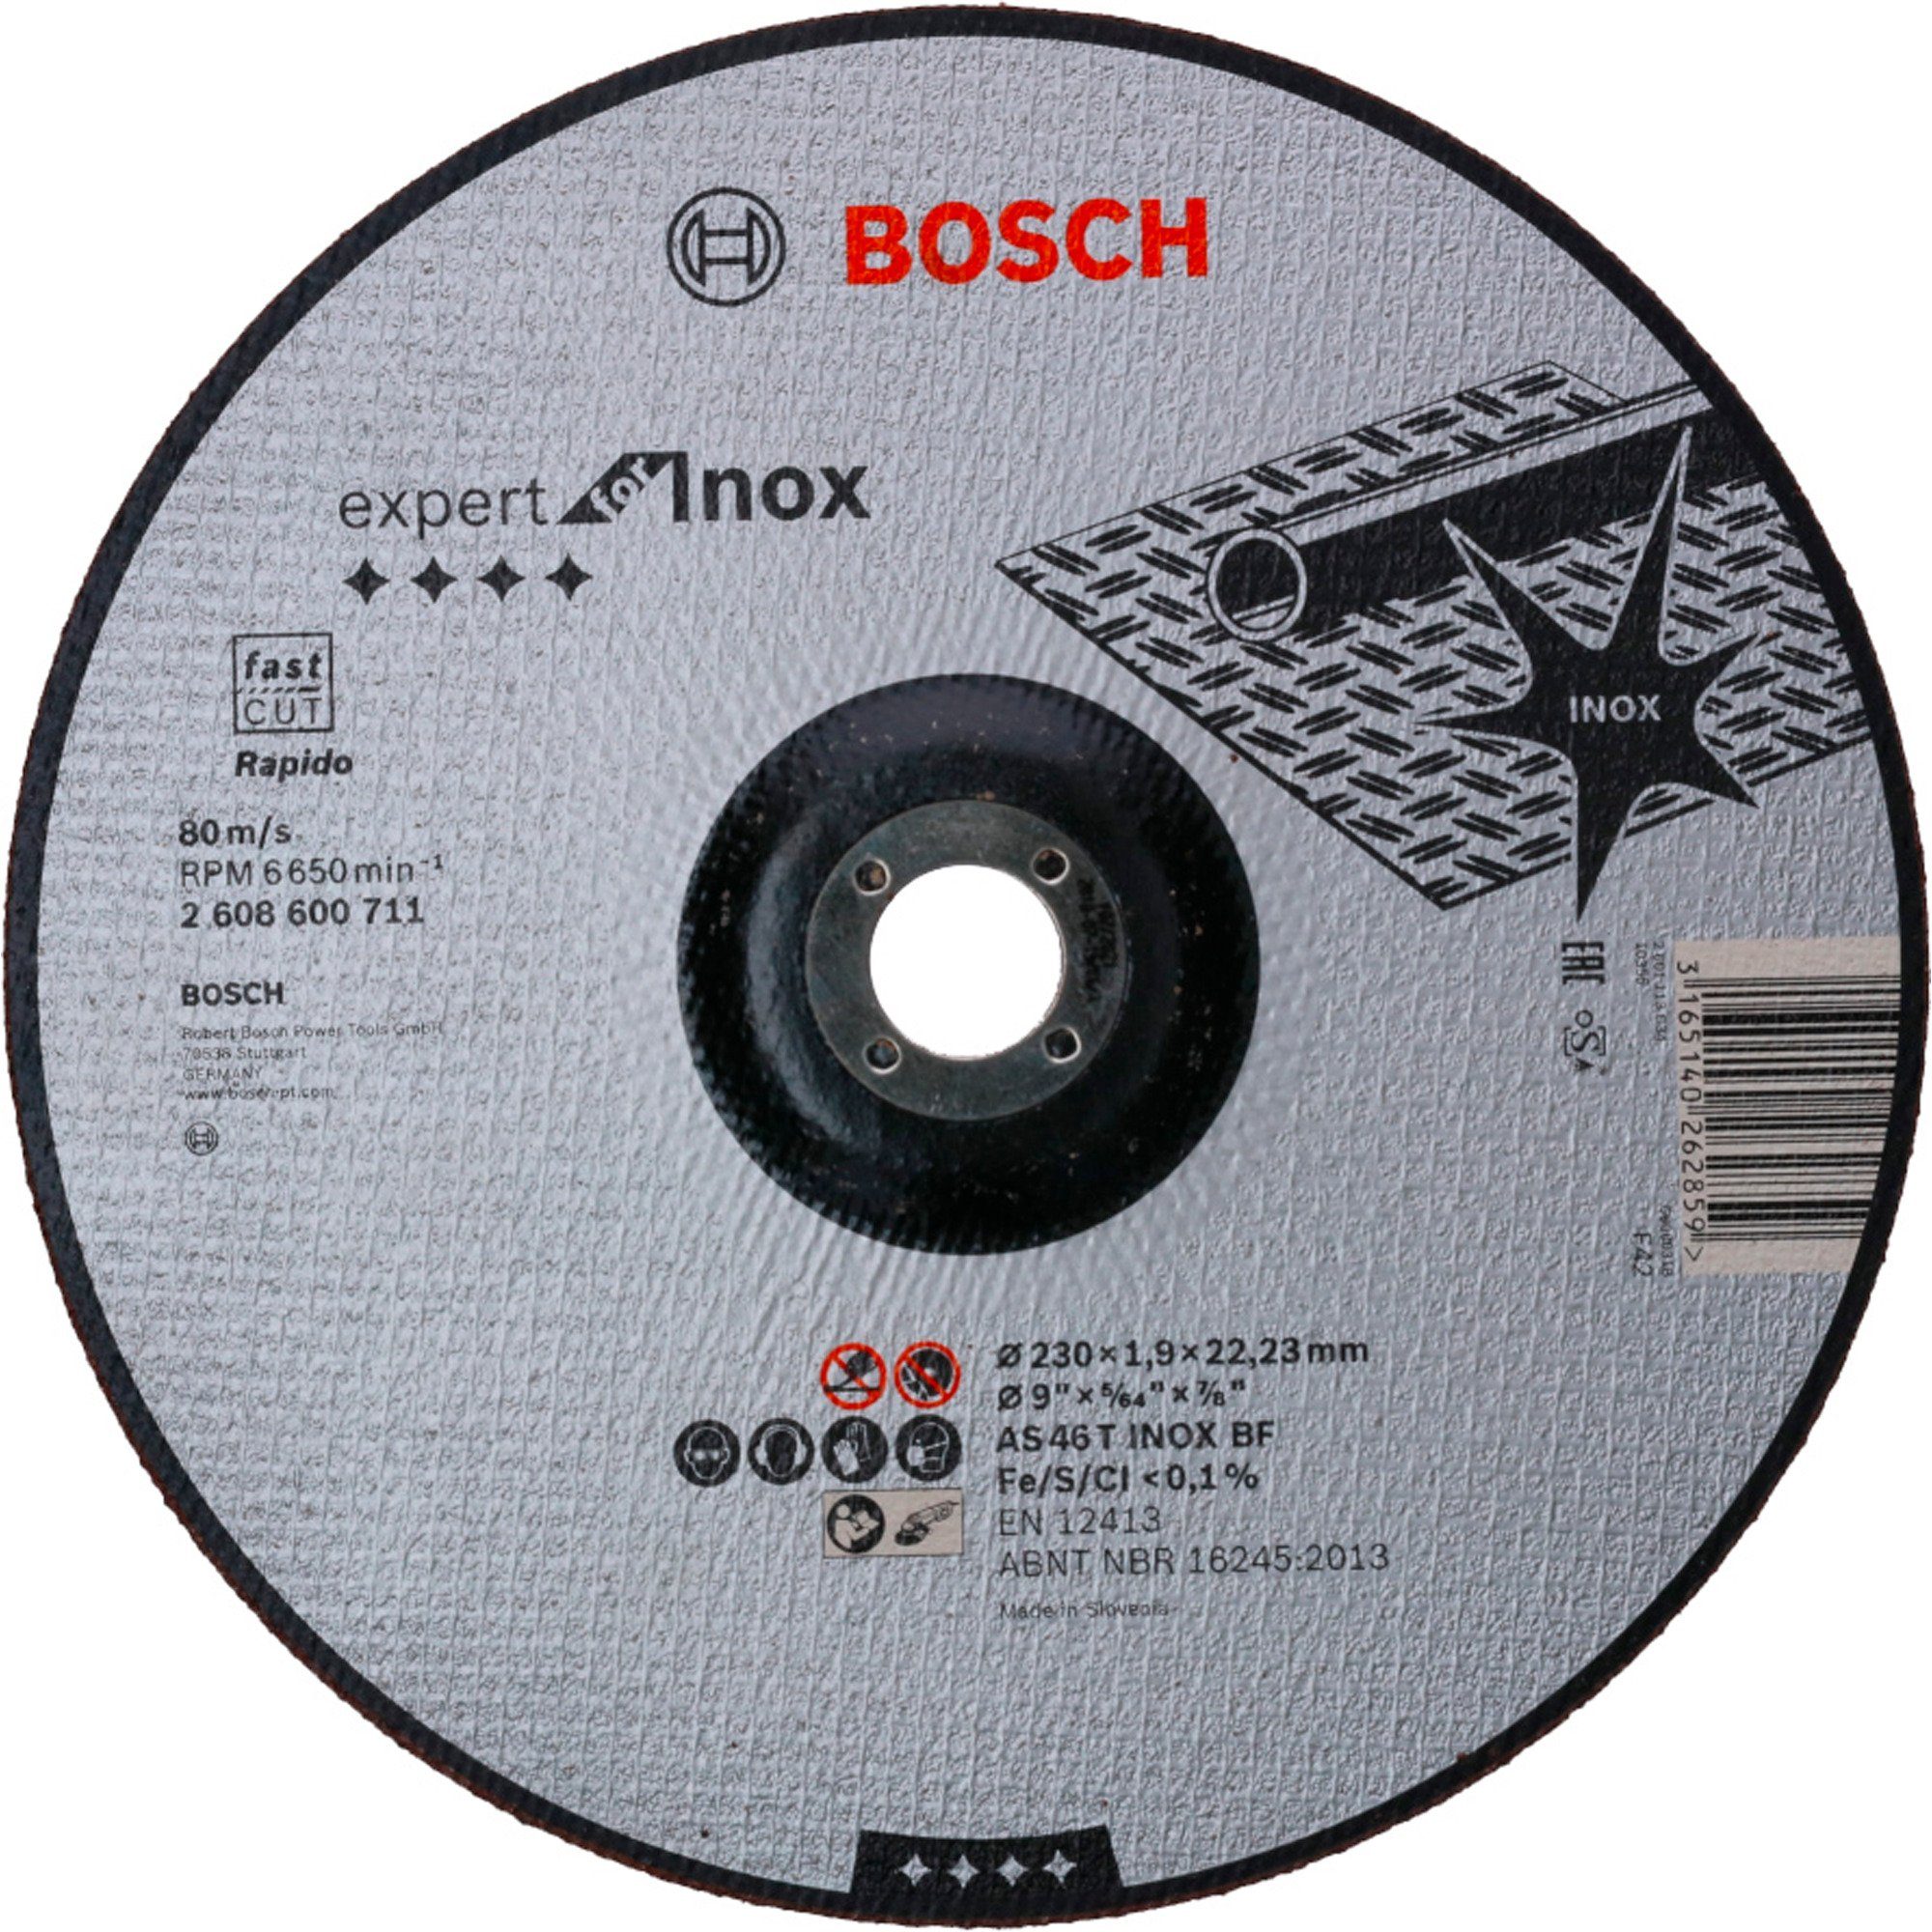 BOSCH Trennscheibe Trennscheibe Expert for Inox - Rapido, Ø 230mm